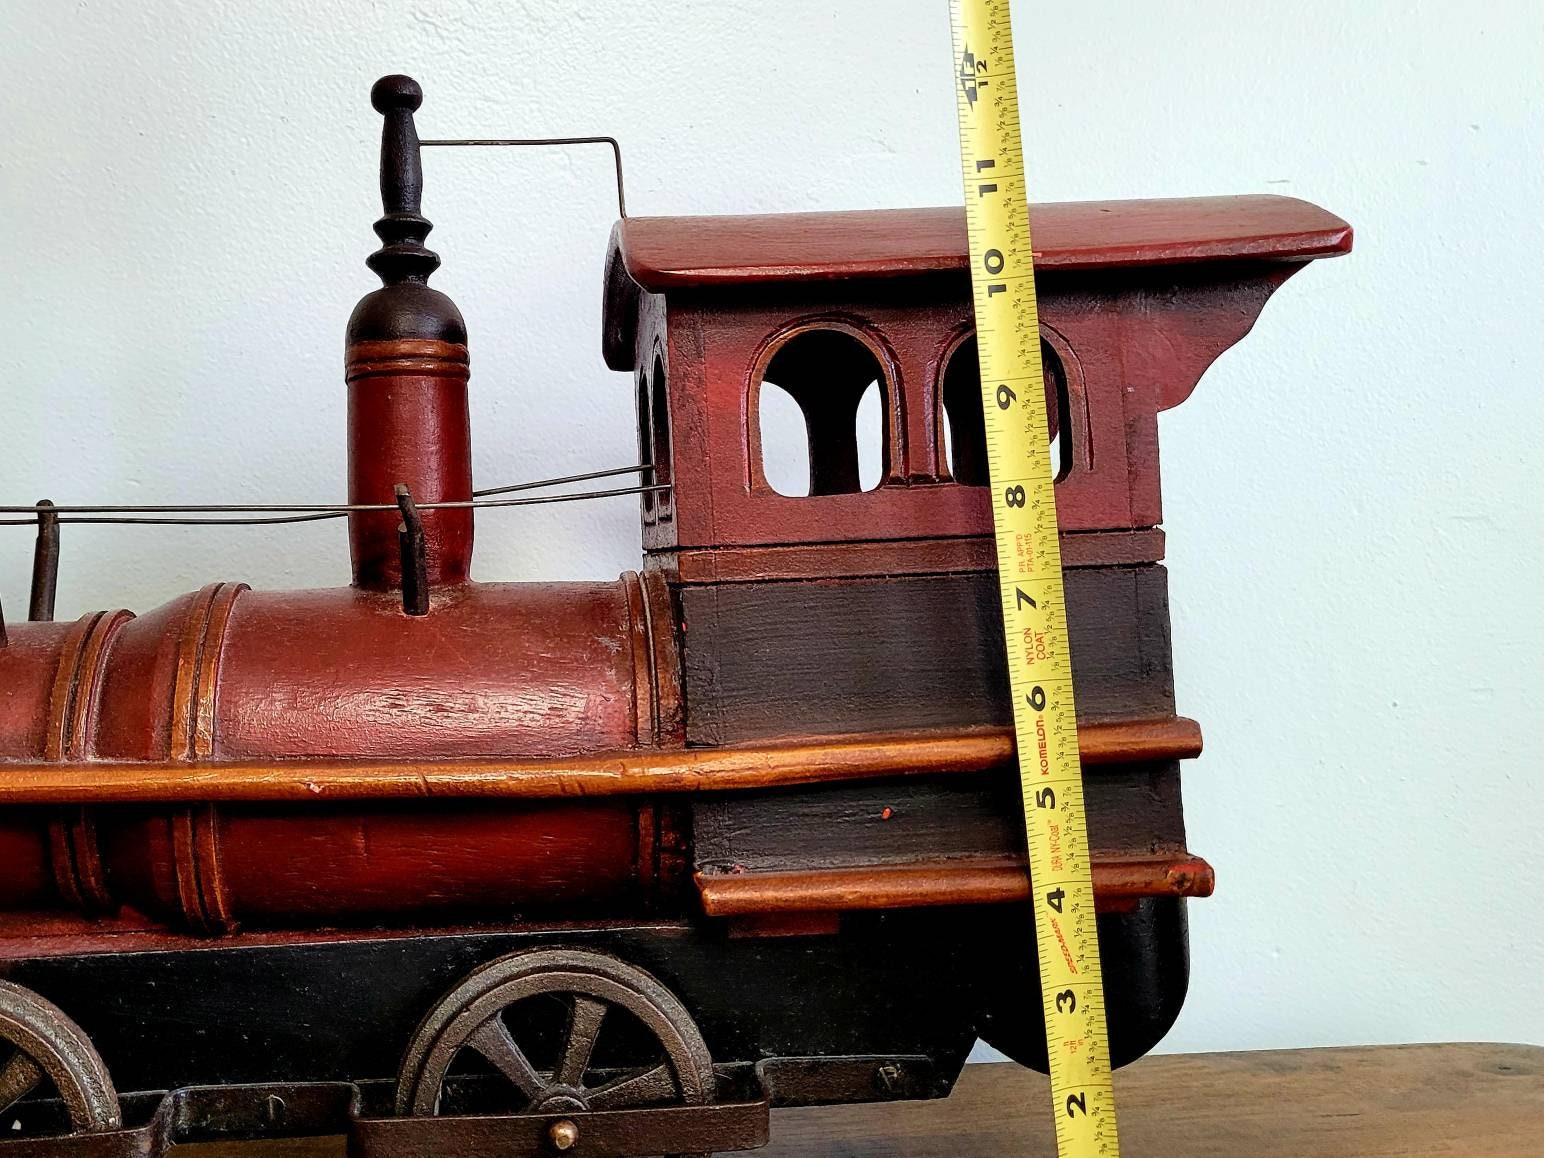 Rokr Wooden Steam Locomotive - Toyberg